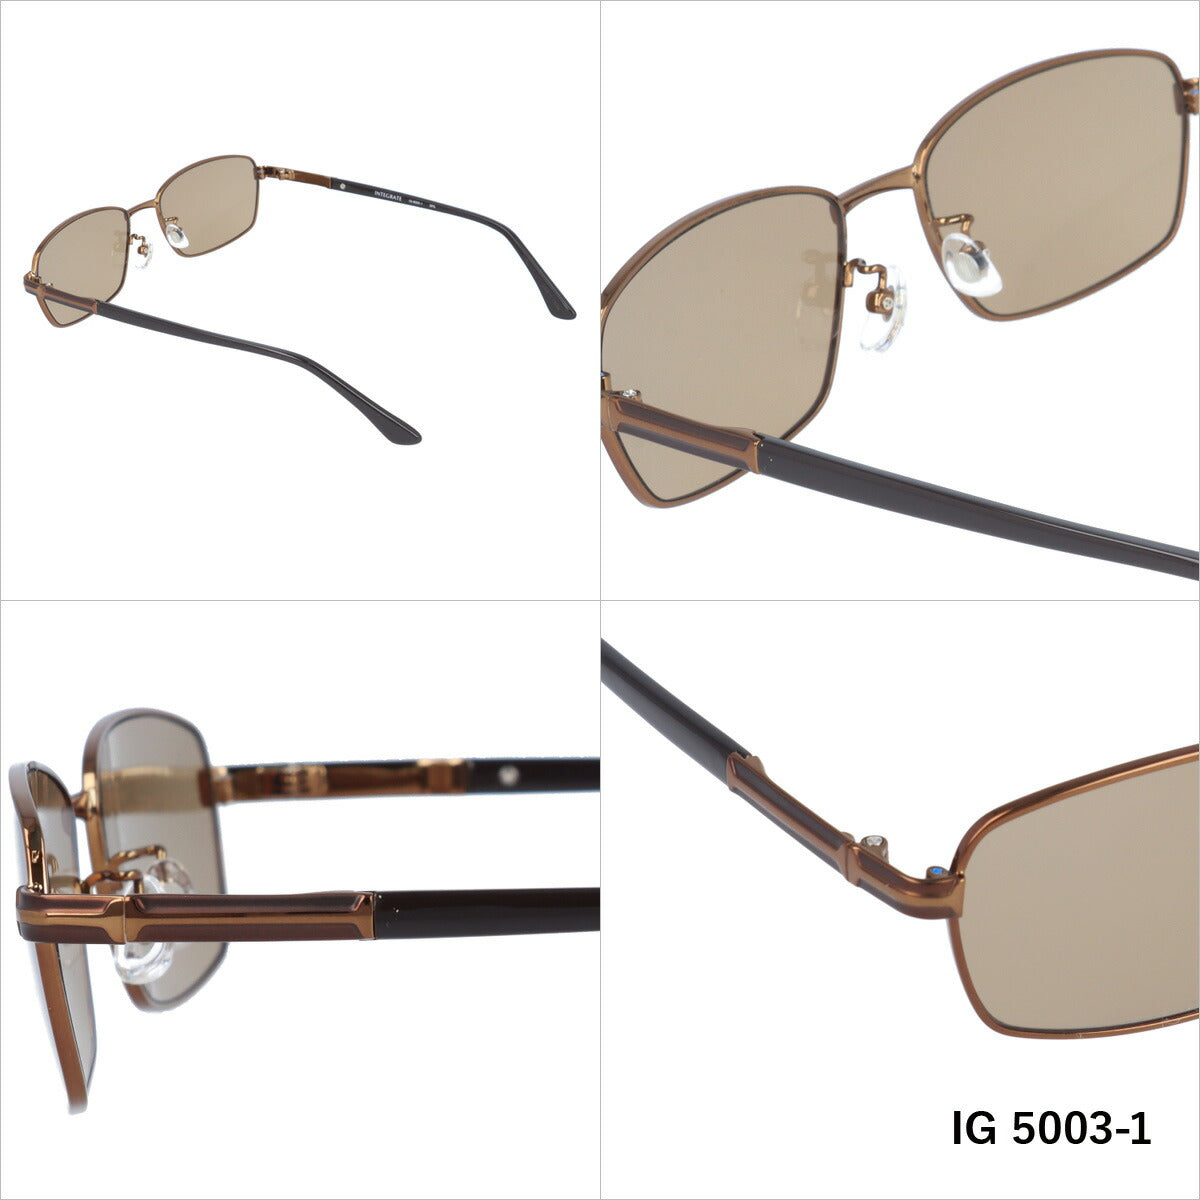 おしゃれ サングラス INTEGRATE インテグレート IG 5003 全3色 57サイズ アジアンフィット スクエア型 メンズ レディース UVカット 紫外線 対策 ブランド 眼鏡 メガネ アイウェア 人気 おすすめ ラッピング無料